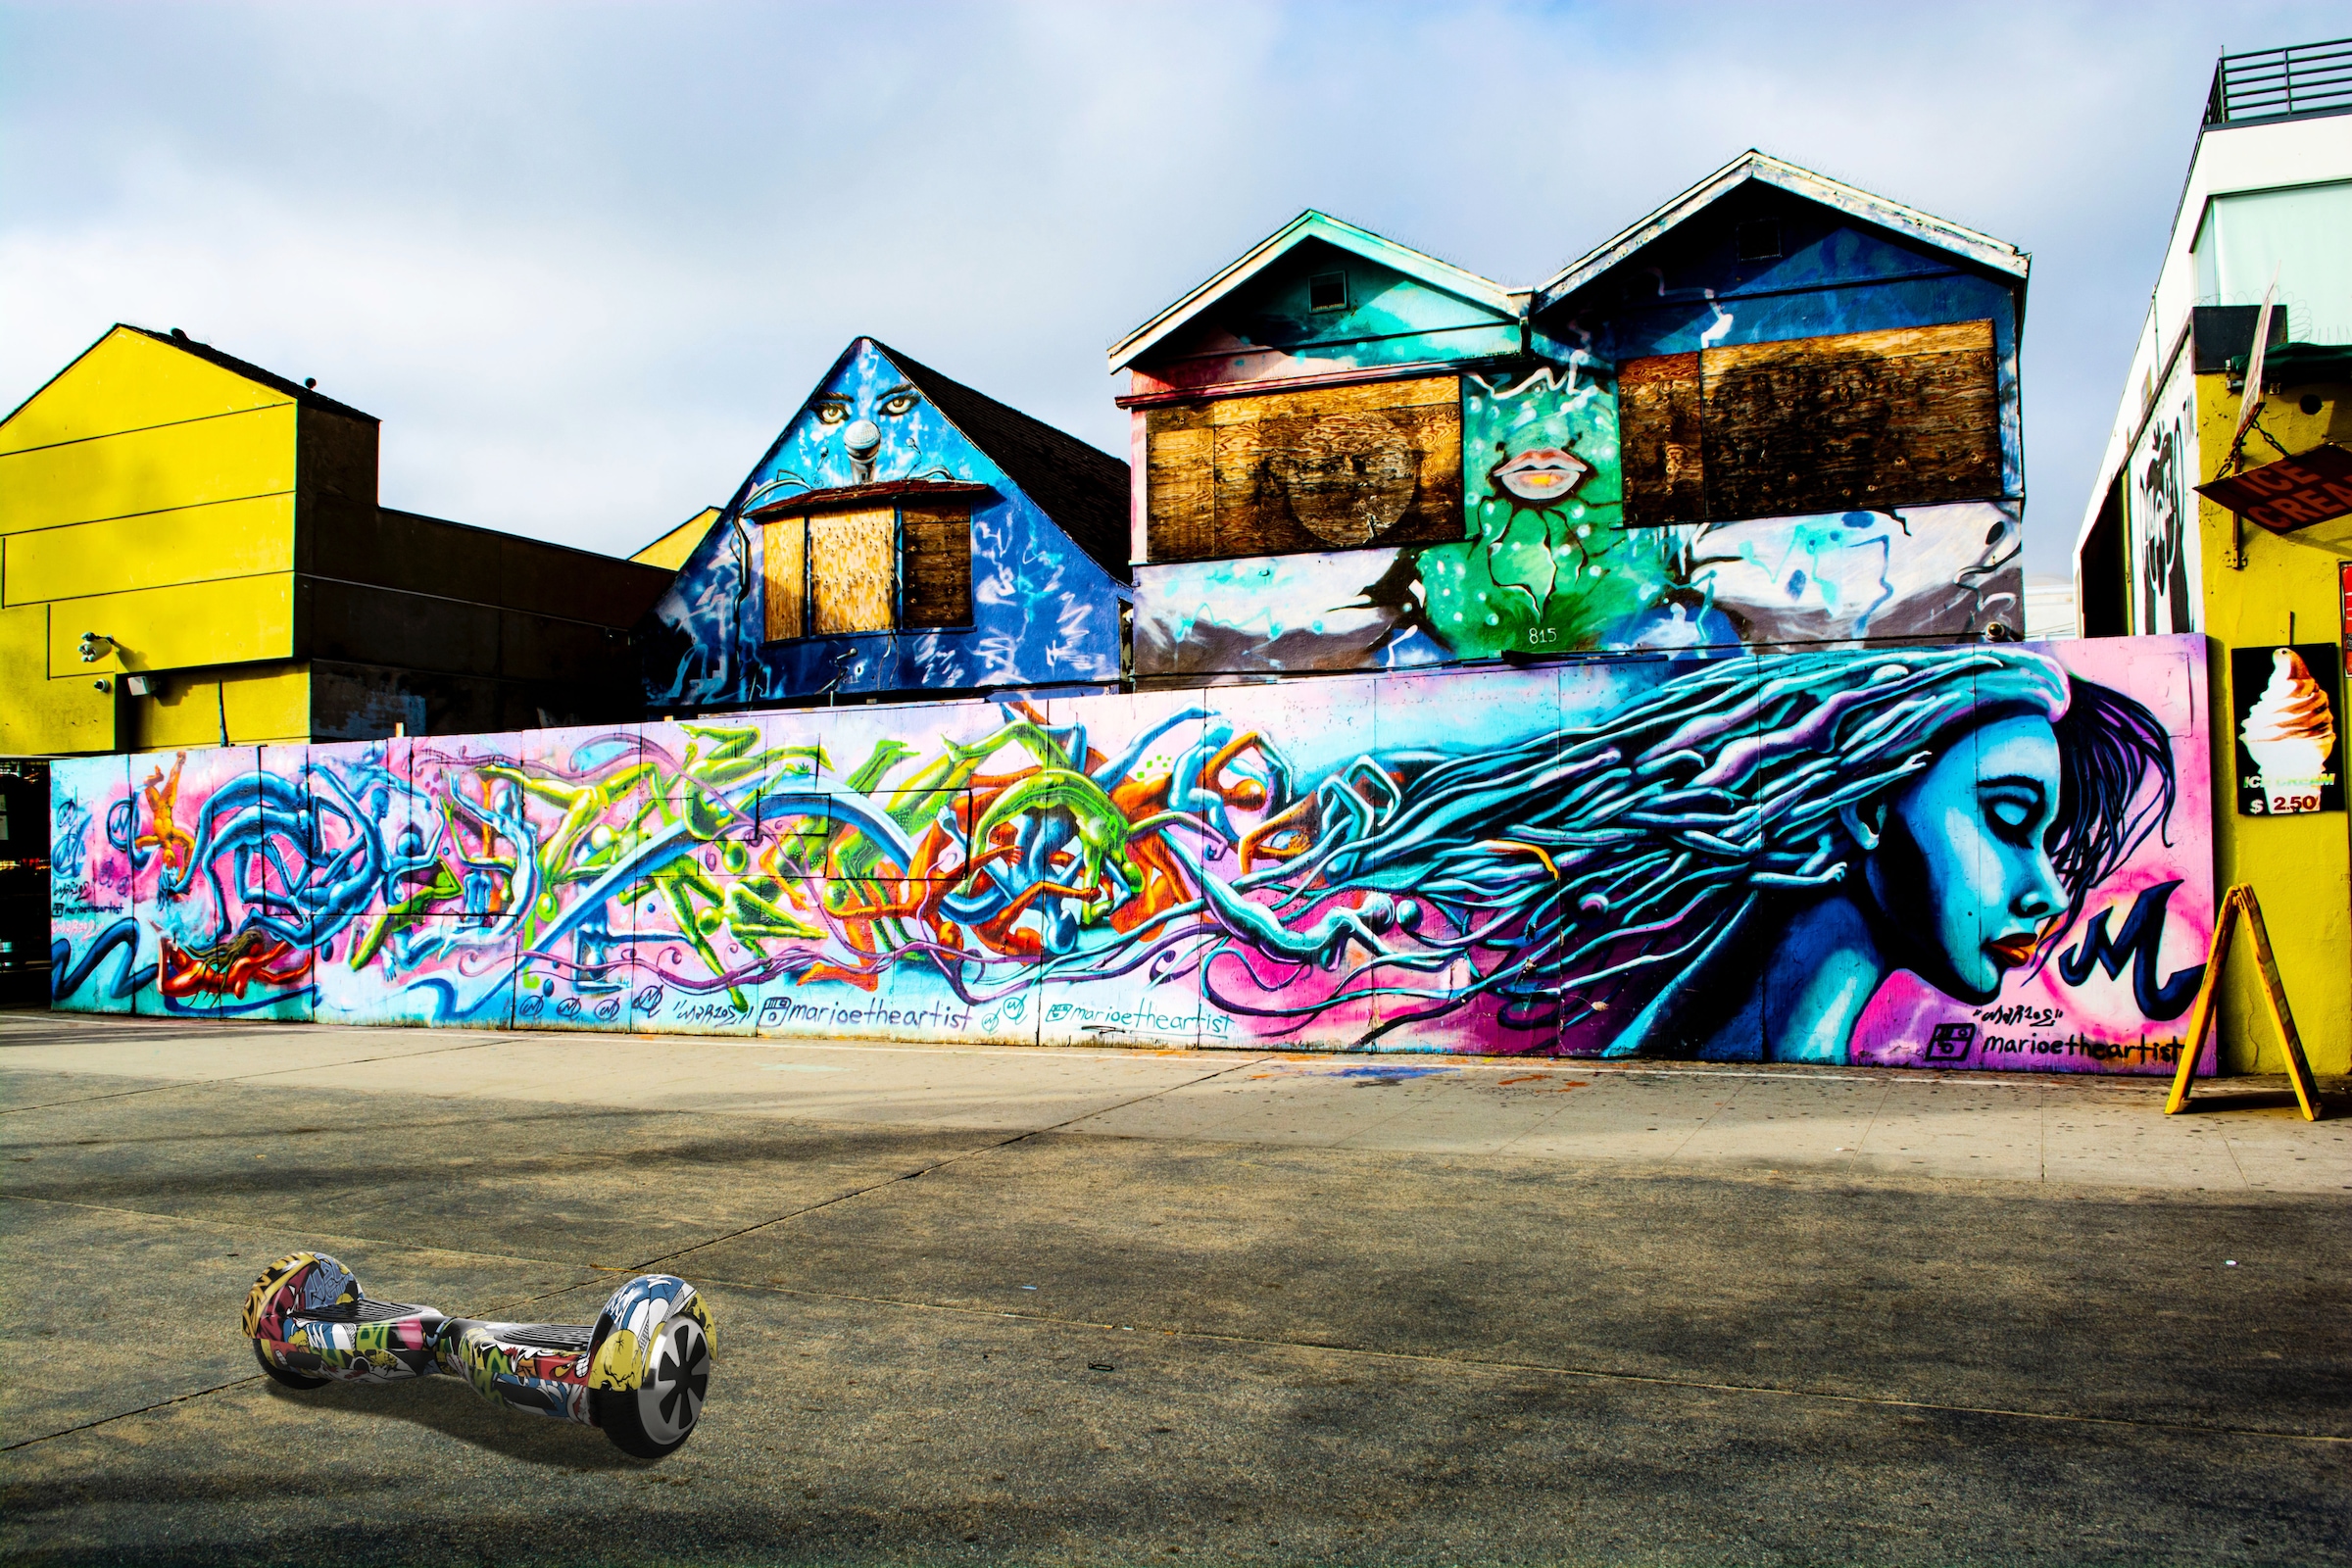 be cool Balance Scooter »6,5“ Graffiti inkl. Rucksack und Sound-Dot«, 12 km/h, 10 km